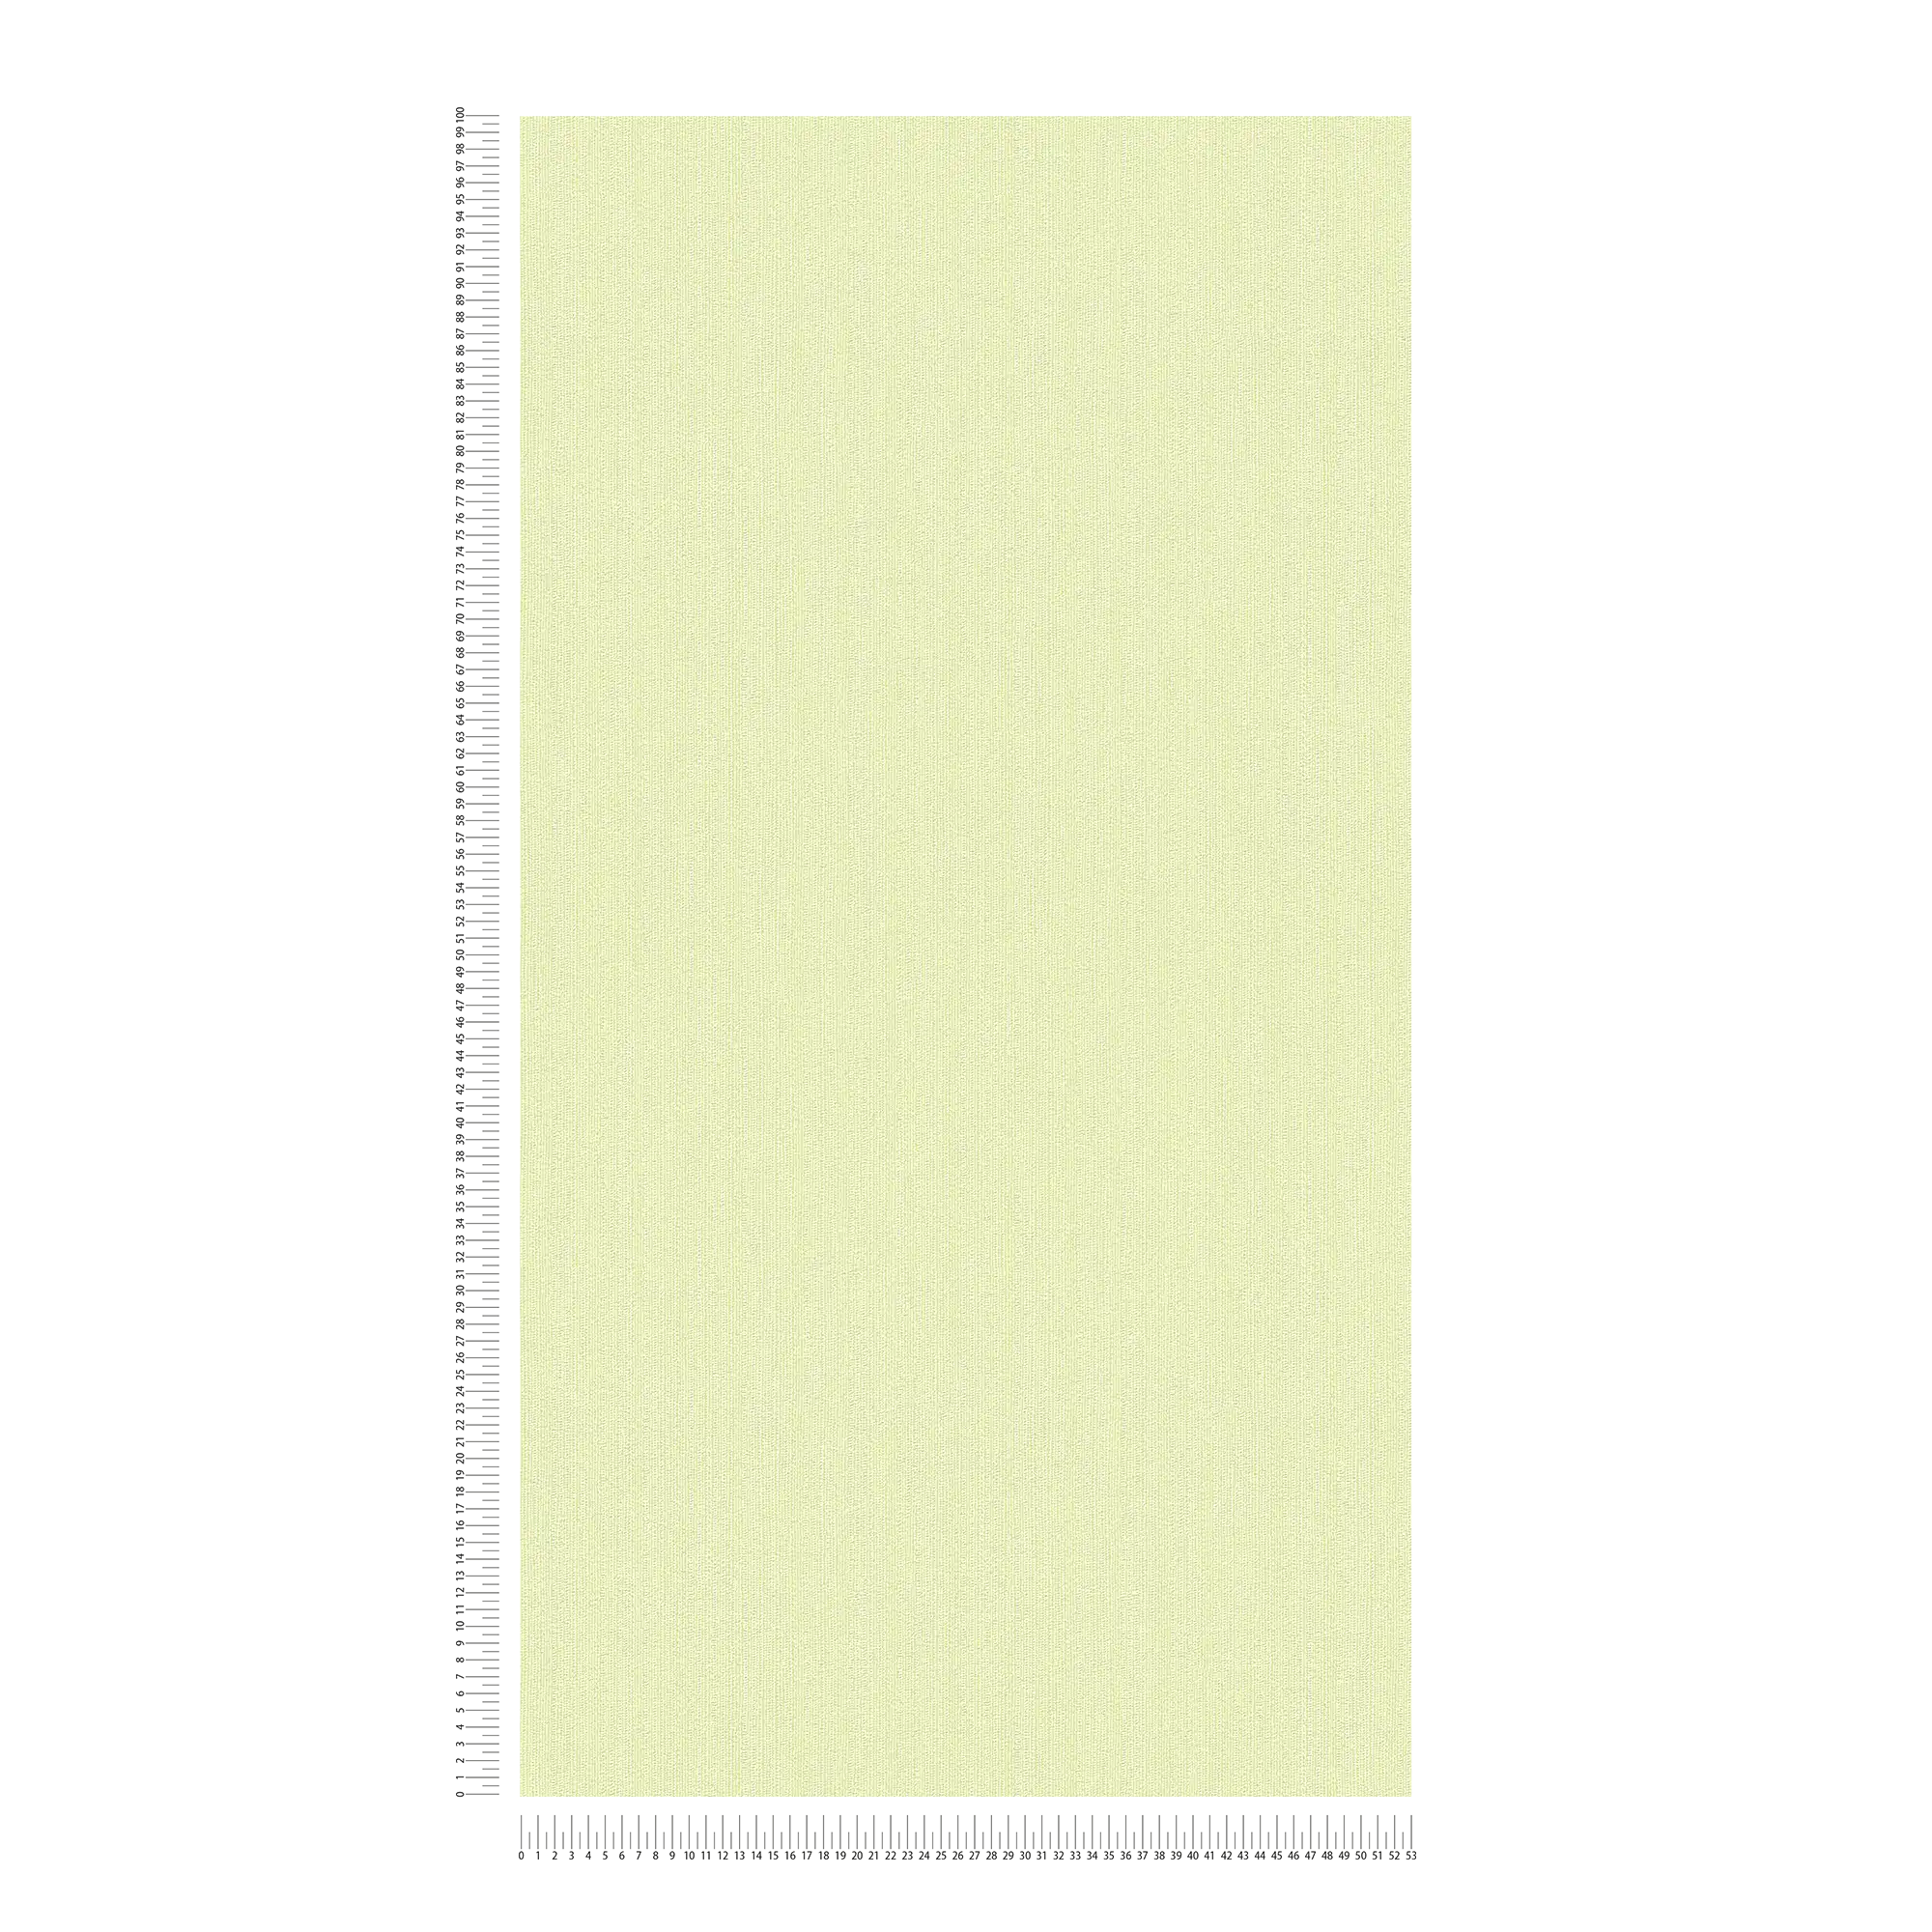             Carta da parati in tessuto non tessuto di colore verde con un motivo a trama sottile
        